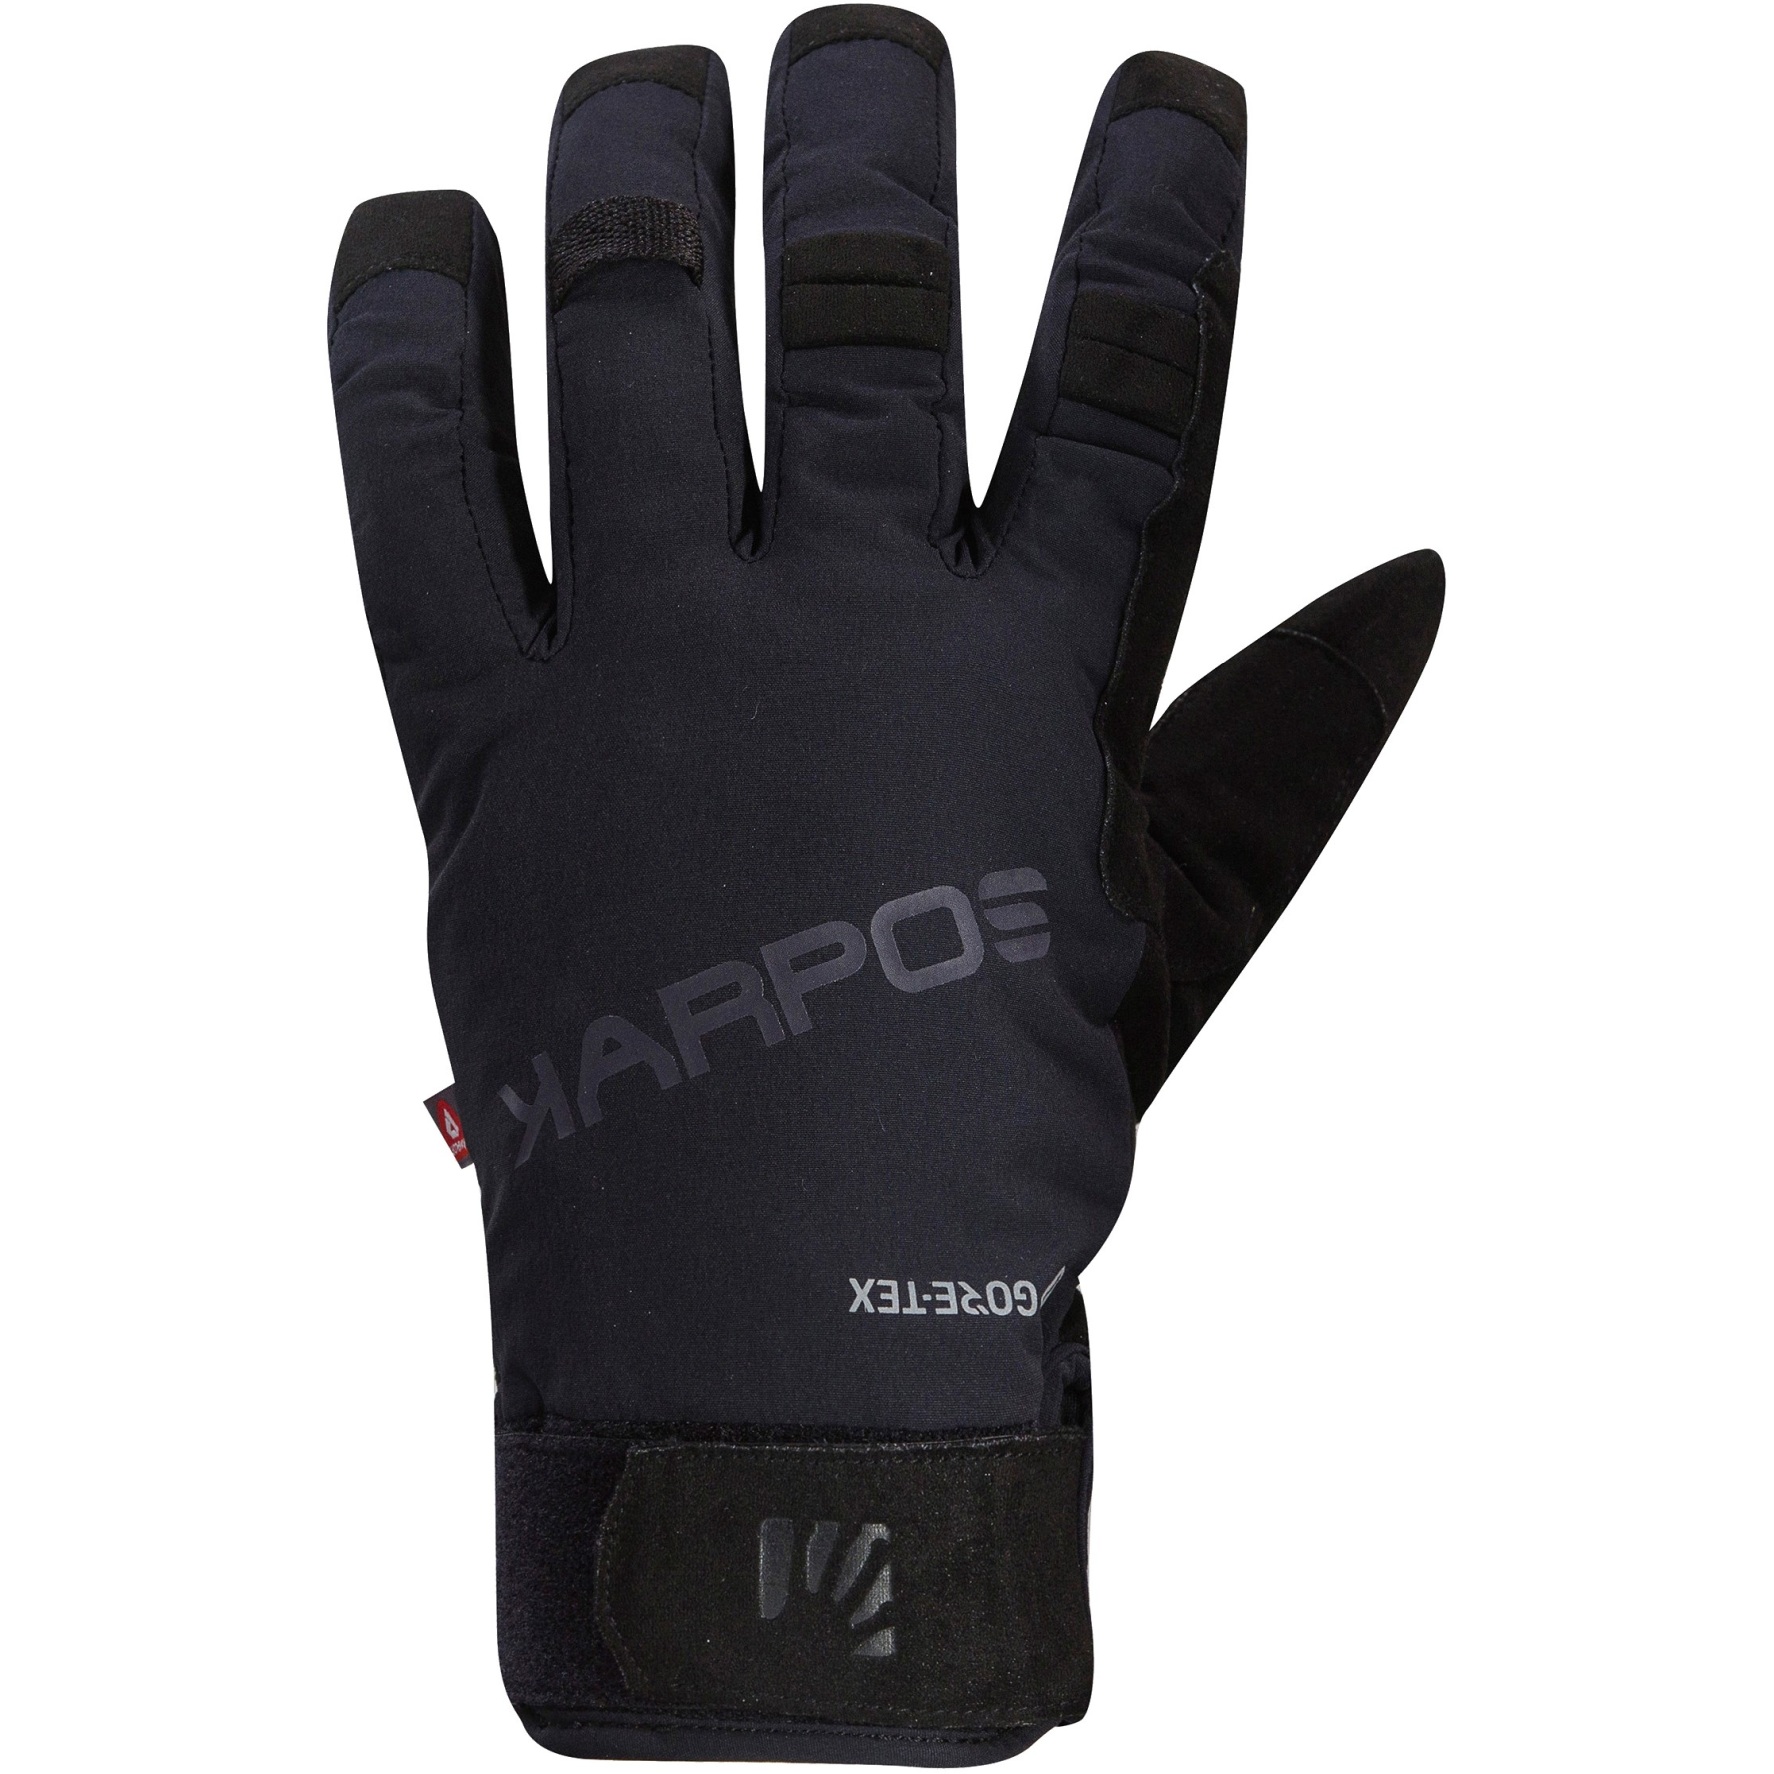 Productfoto van Karpos Goretex Handschoenen - zwart